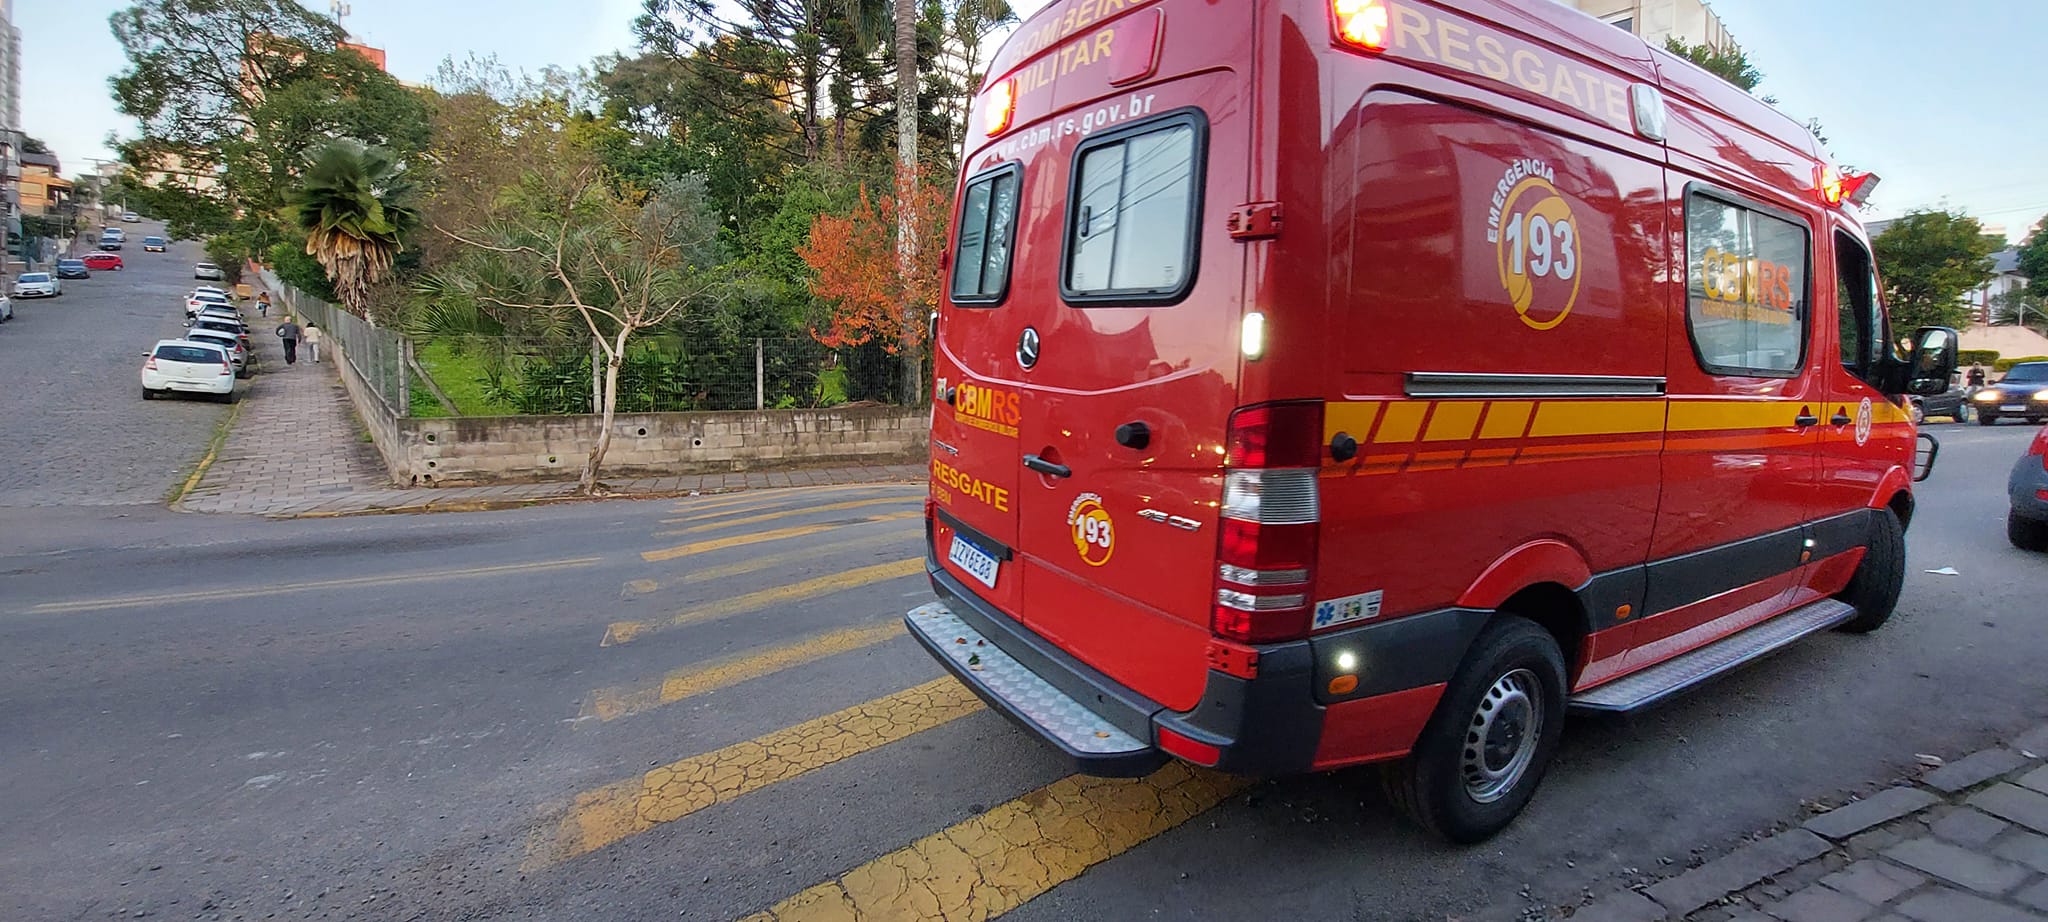 Motociclista atropela pedestre e foge sem prestar socorro em Bento Gonçalves